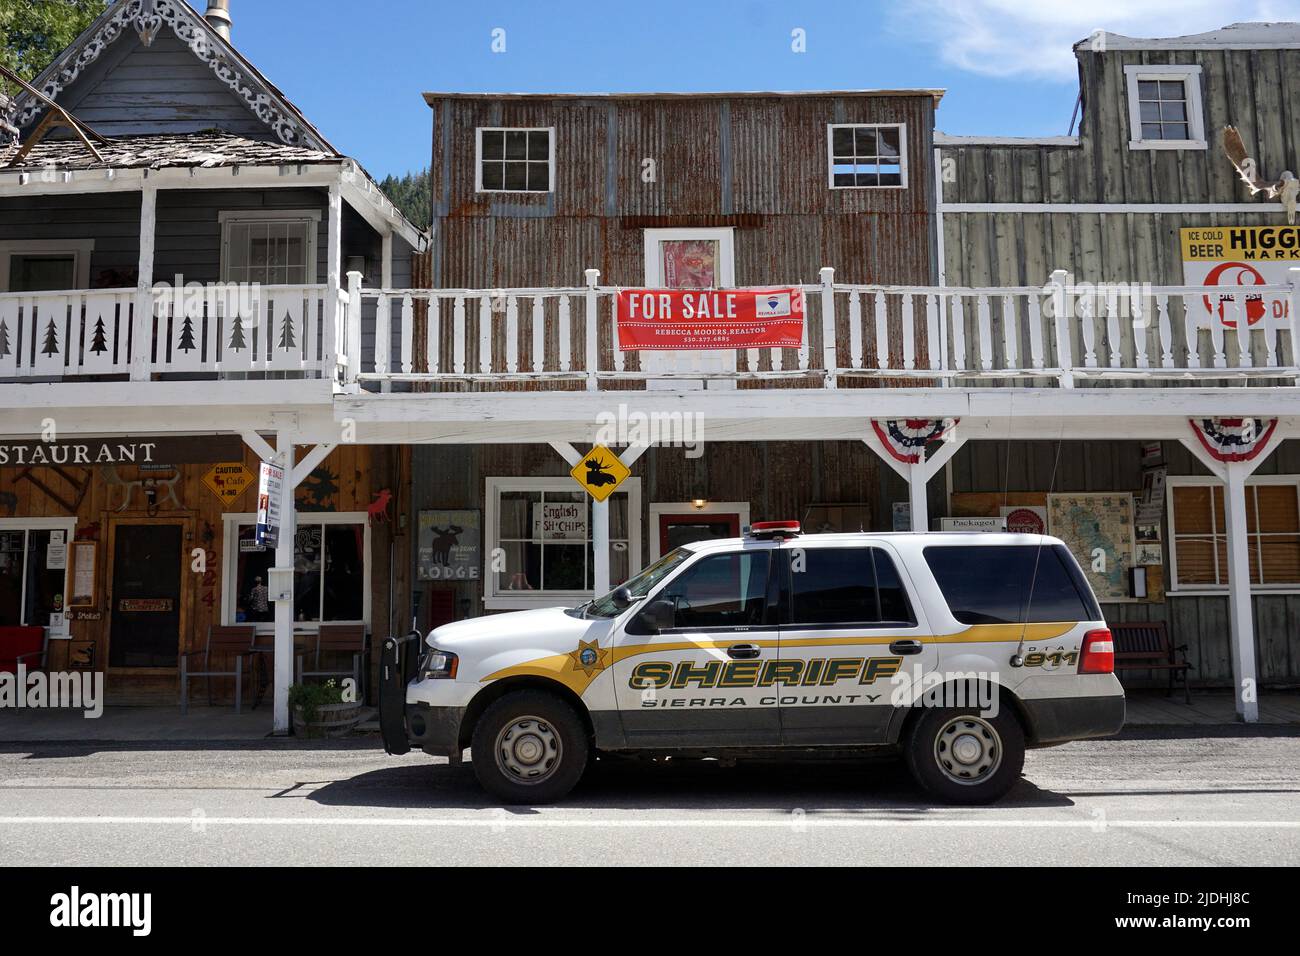 Sheriff's vehicle, Sierra City, California Stock Photo